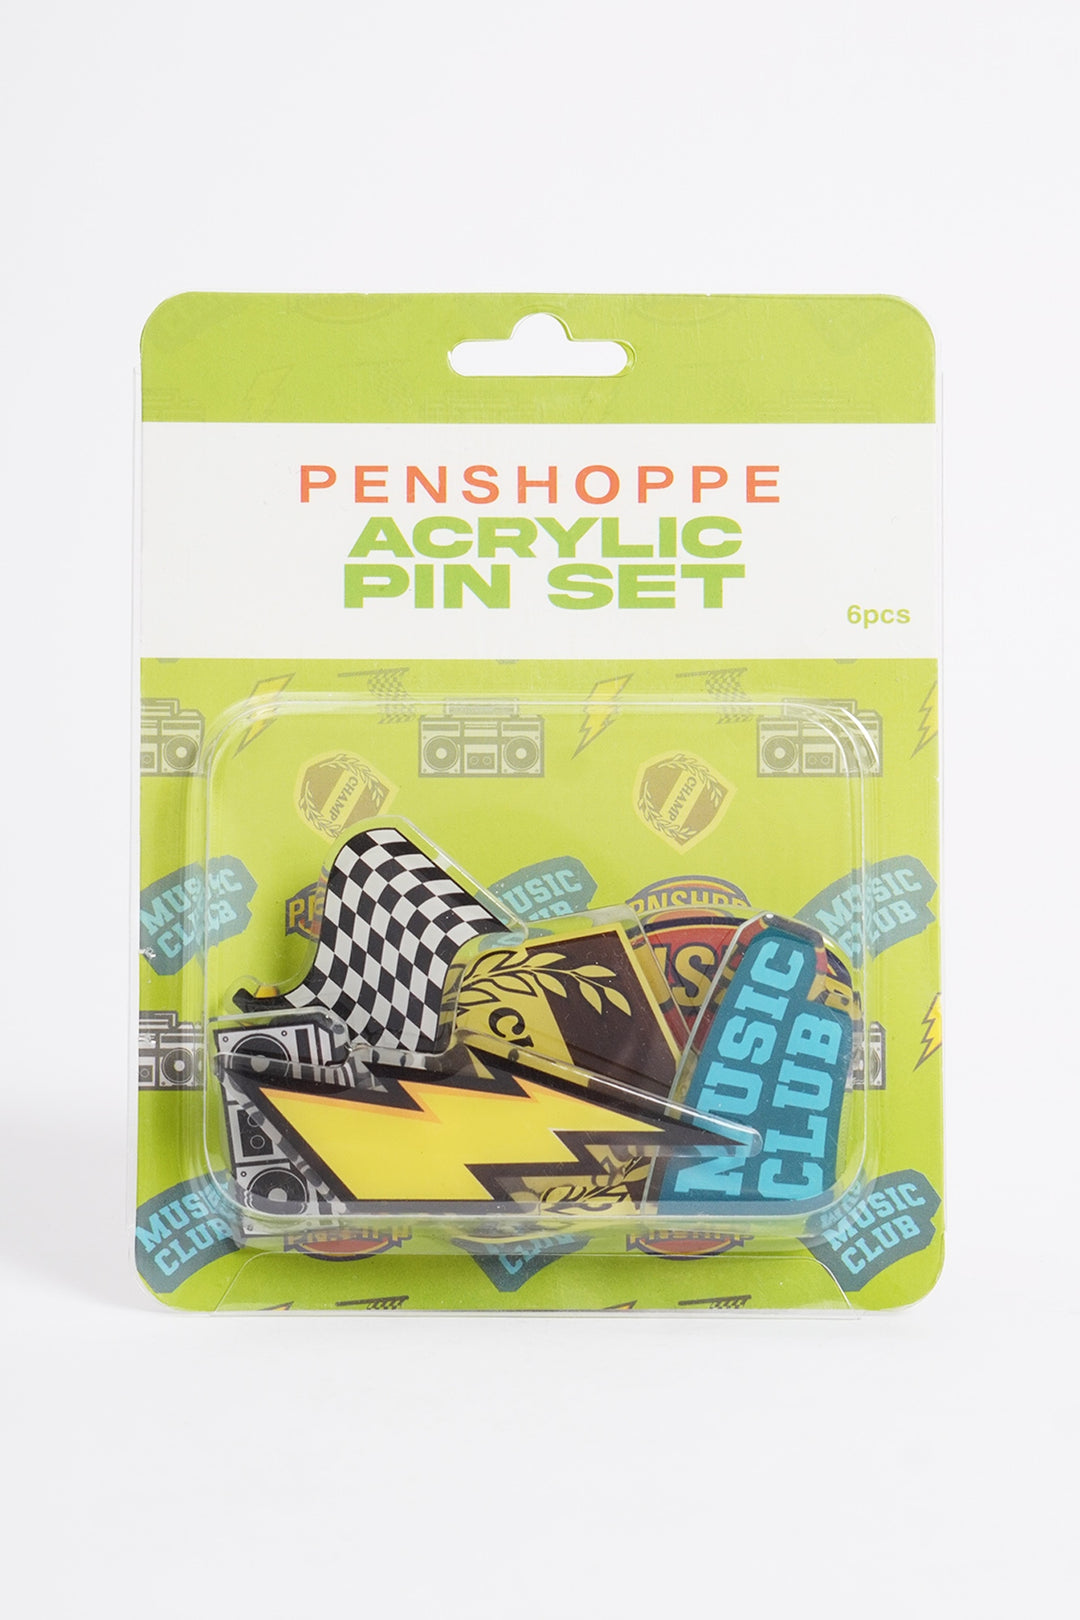 Acrylic Pin Sets